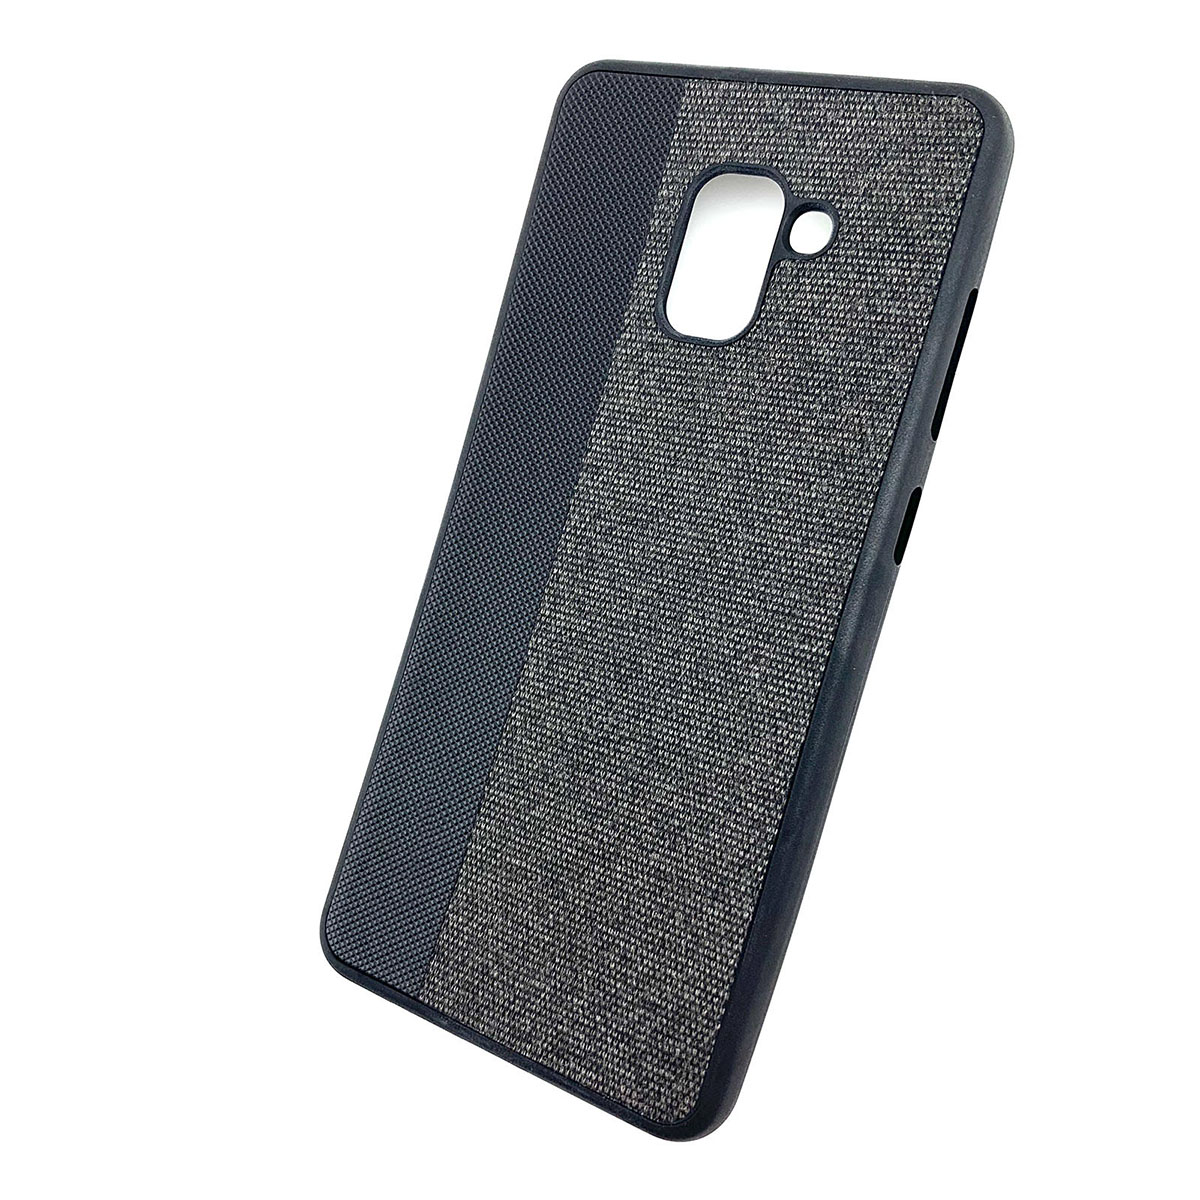 Чехол накладка для SAMSUNG Galaxy A8 Plus (SM-A730), силикон, комбинированный, цвет черный.